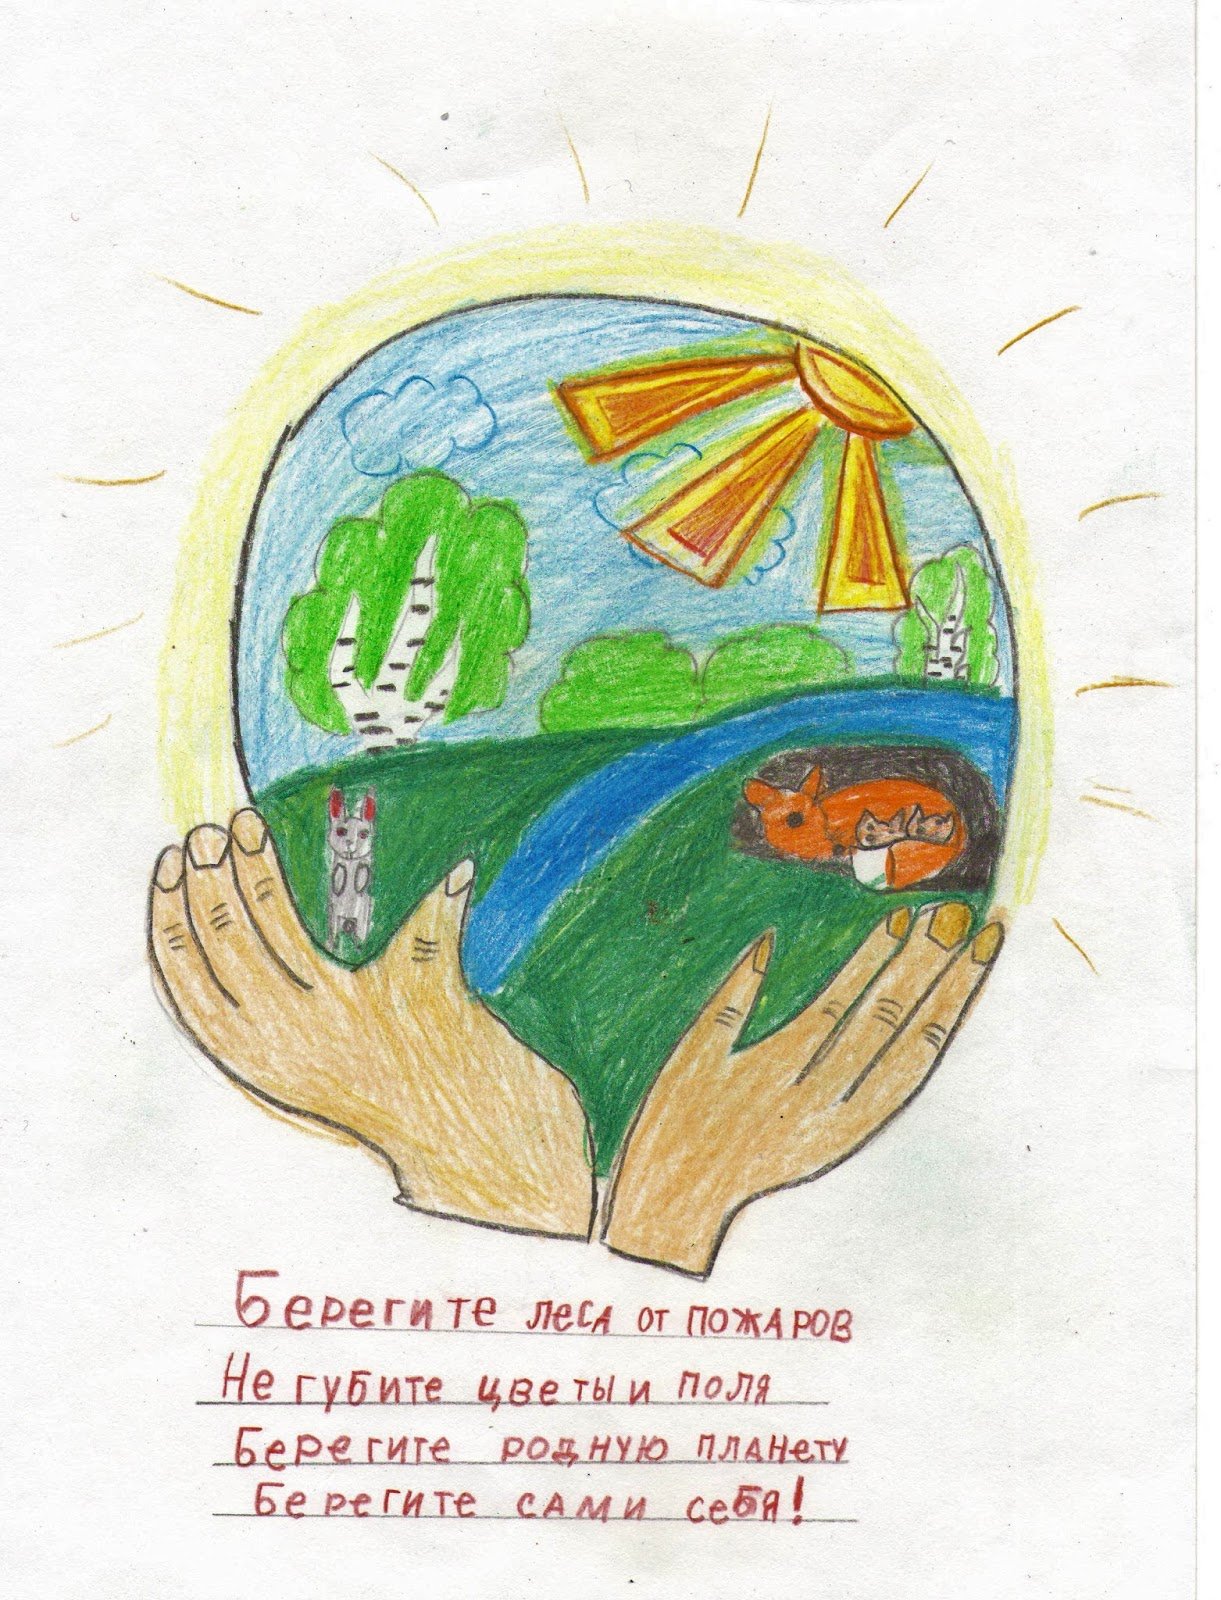 15 апреля день экологических знаний для детей. 15 Апреля день экологических знаний. 15 Апреля день экологических знаний рисунки. День экологических знаний плакат.